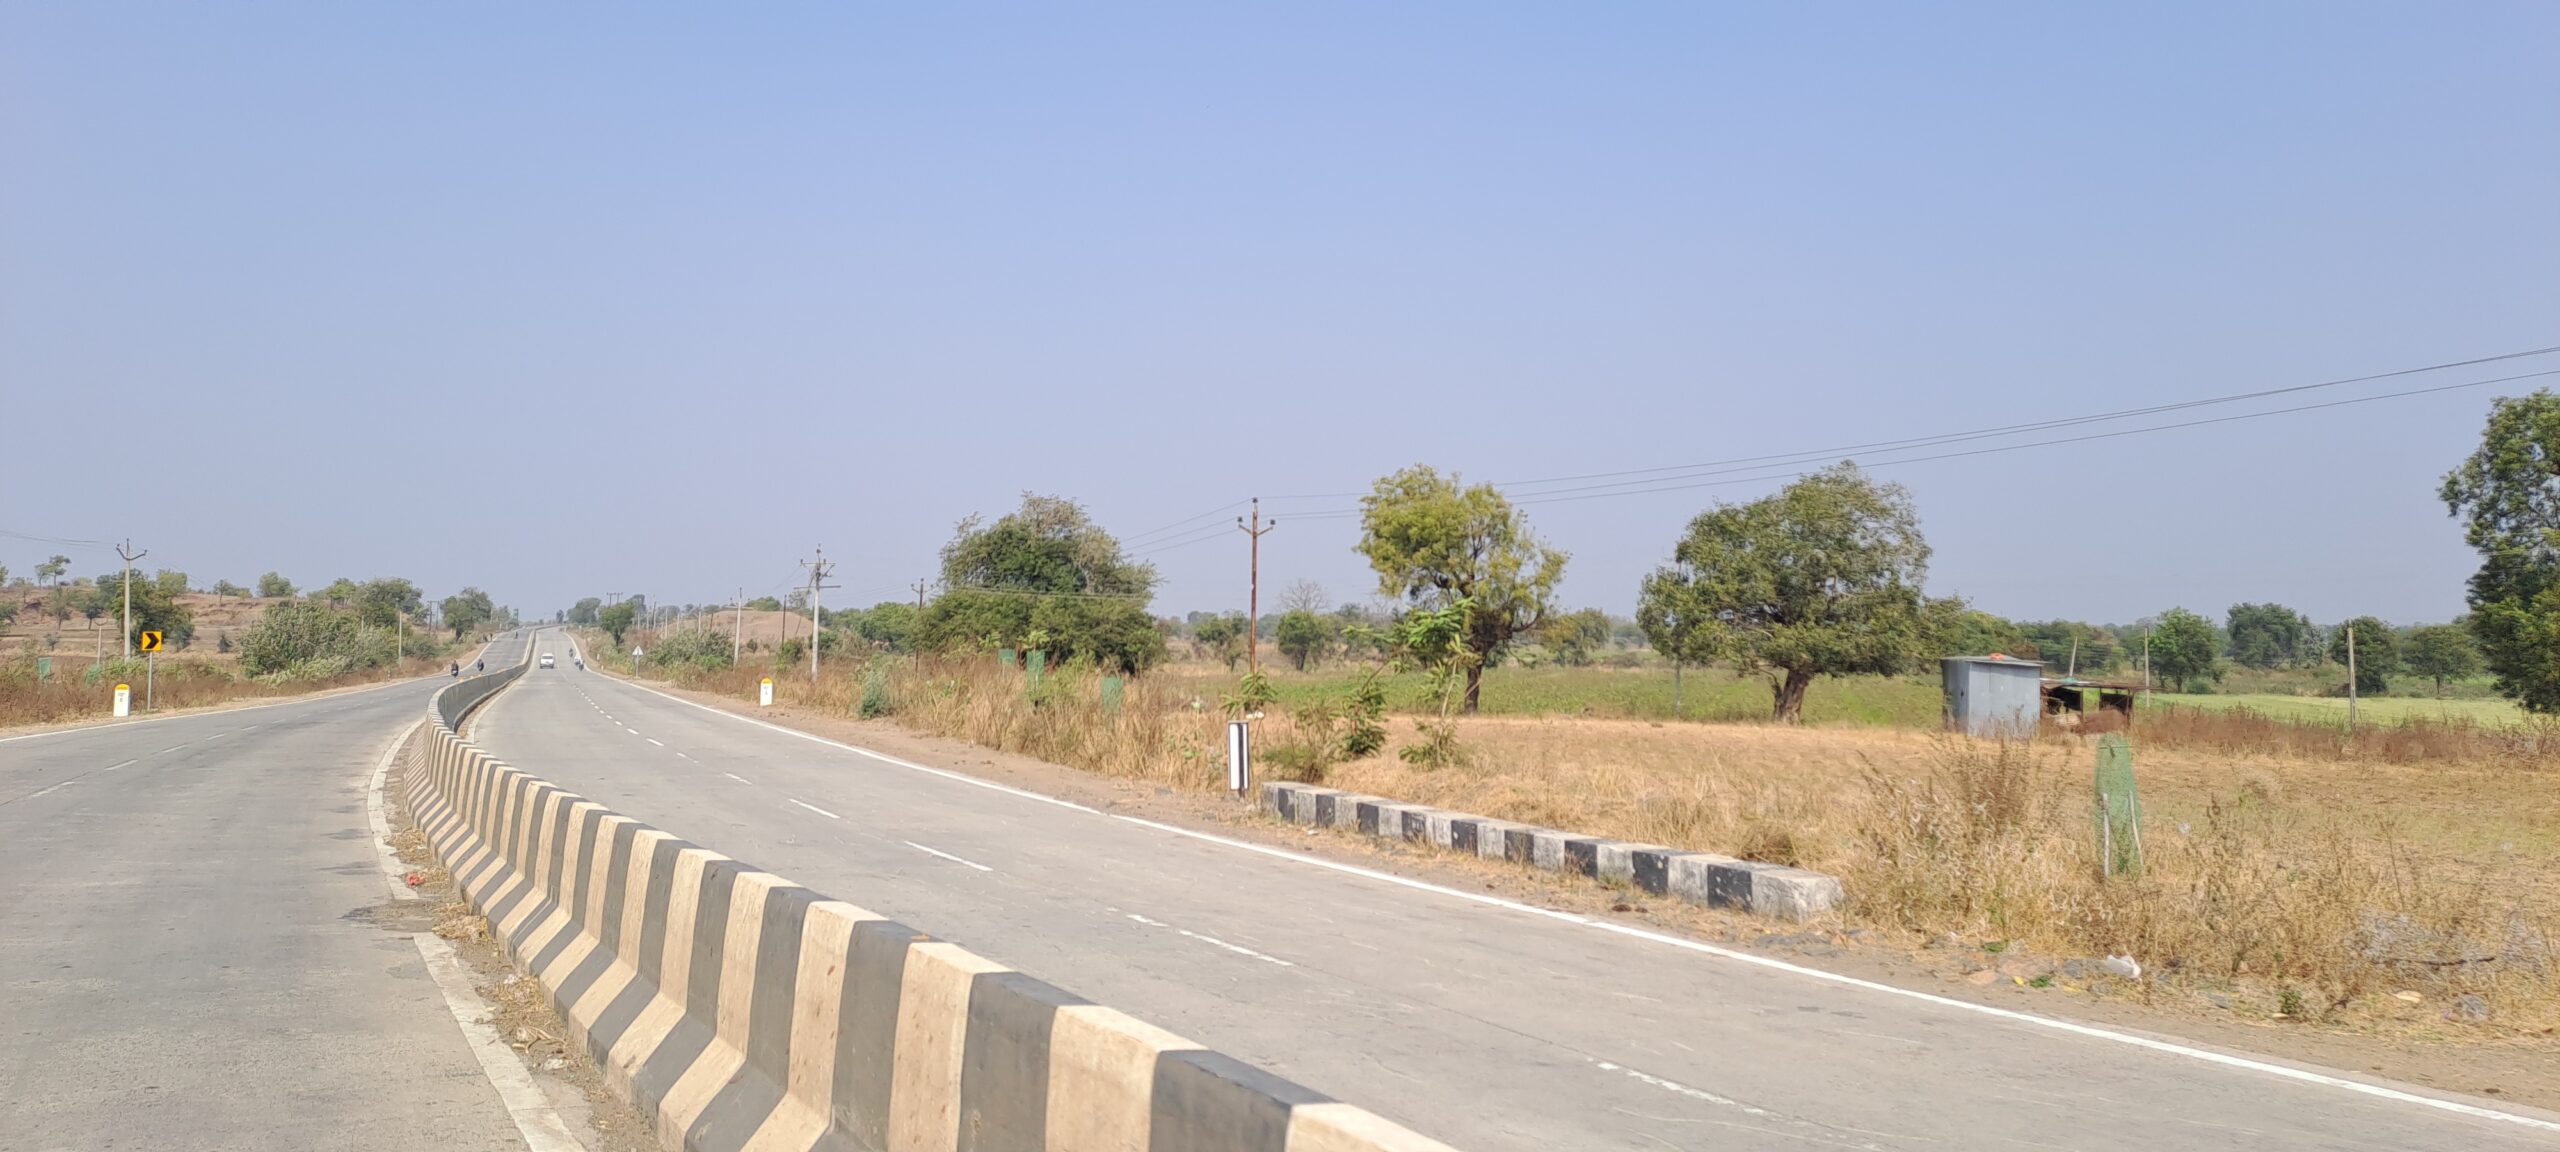 Gooty – Tadipatri Section of NH-67